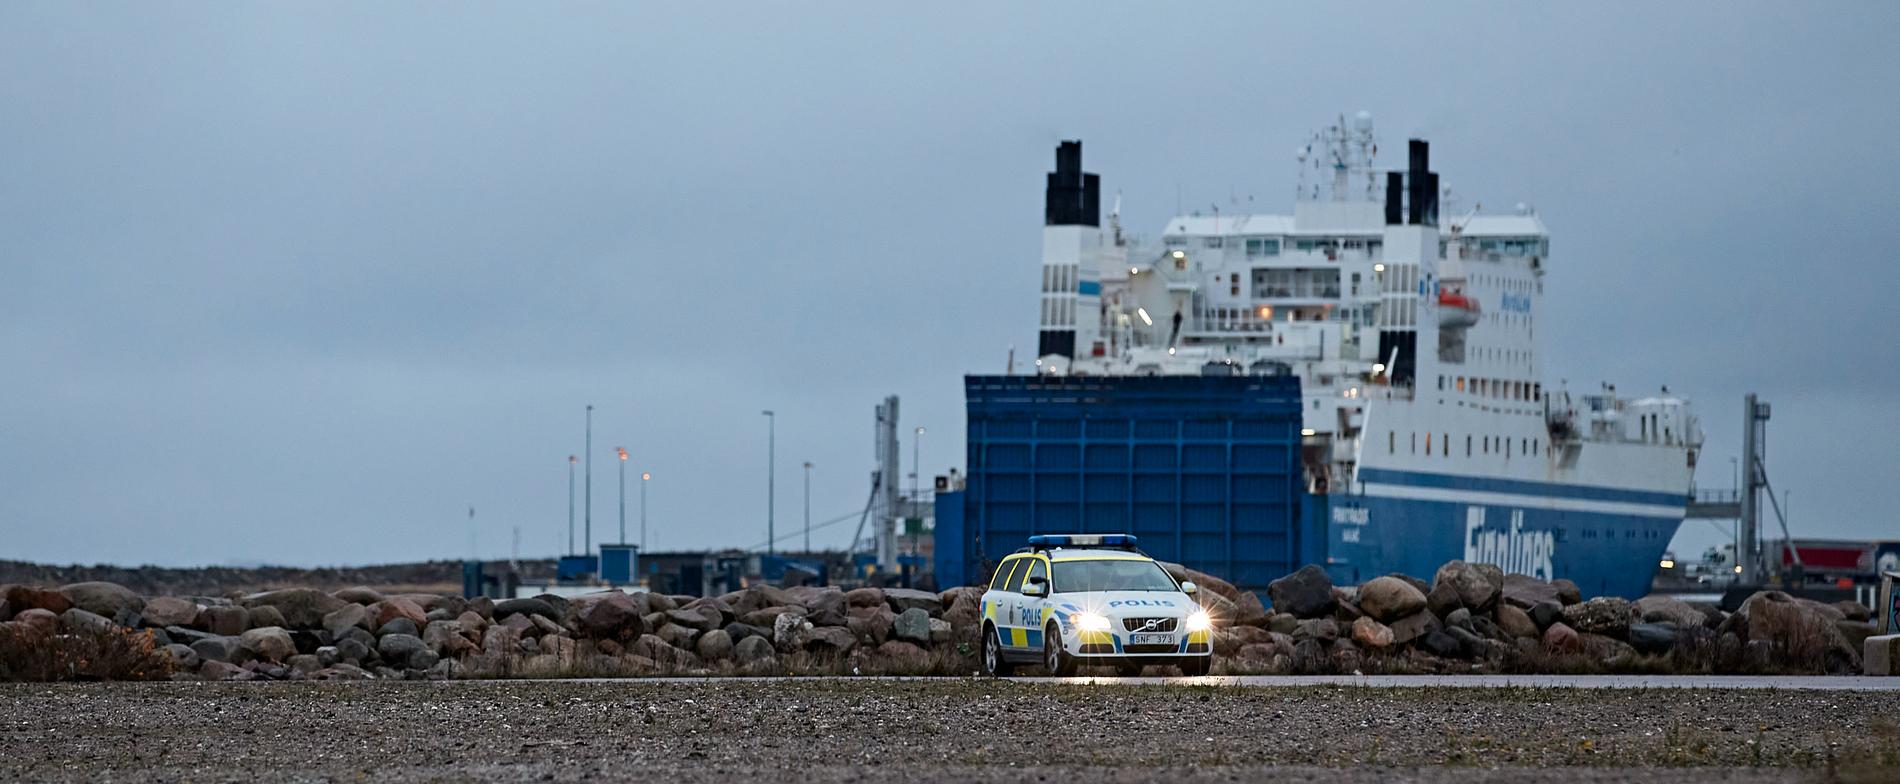 Marinens röjdykare söker föremål på uppdrag av polisen i Malmö.